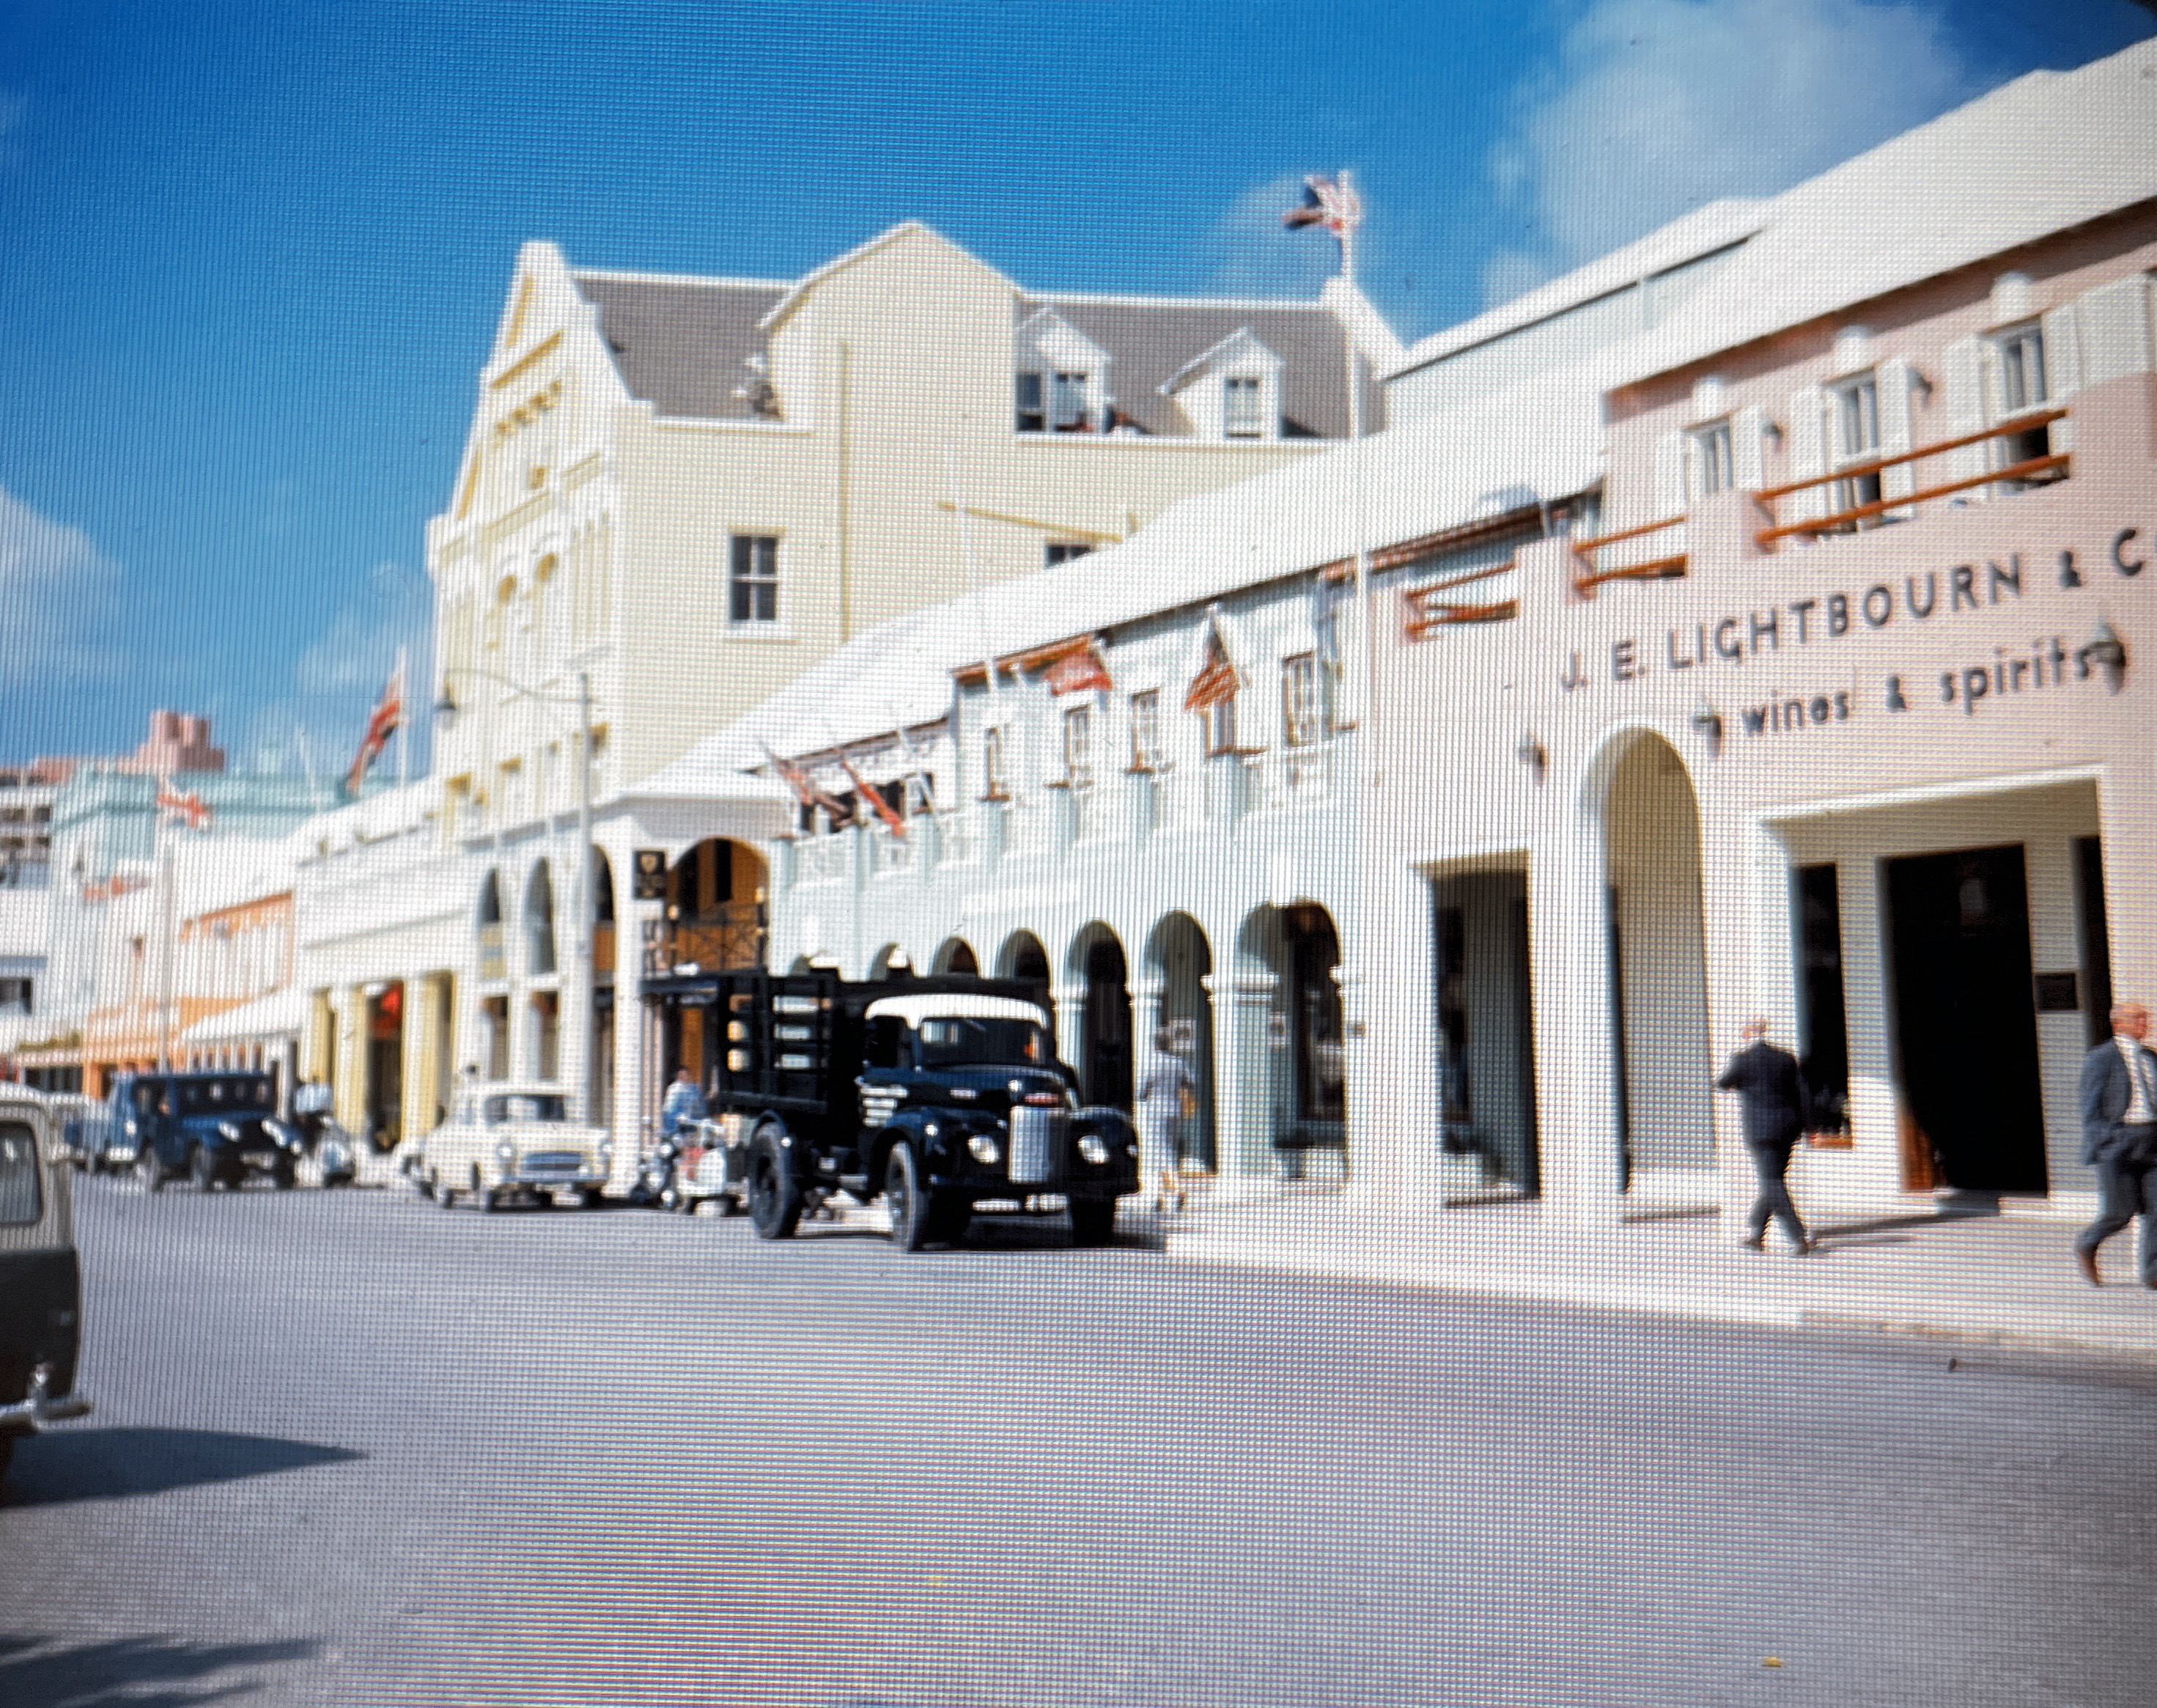 Bermuda in the 1960’s